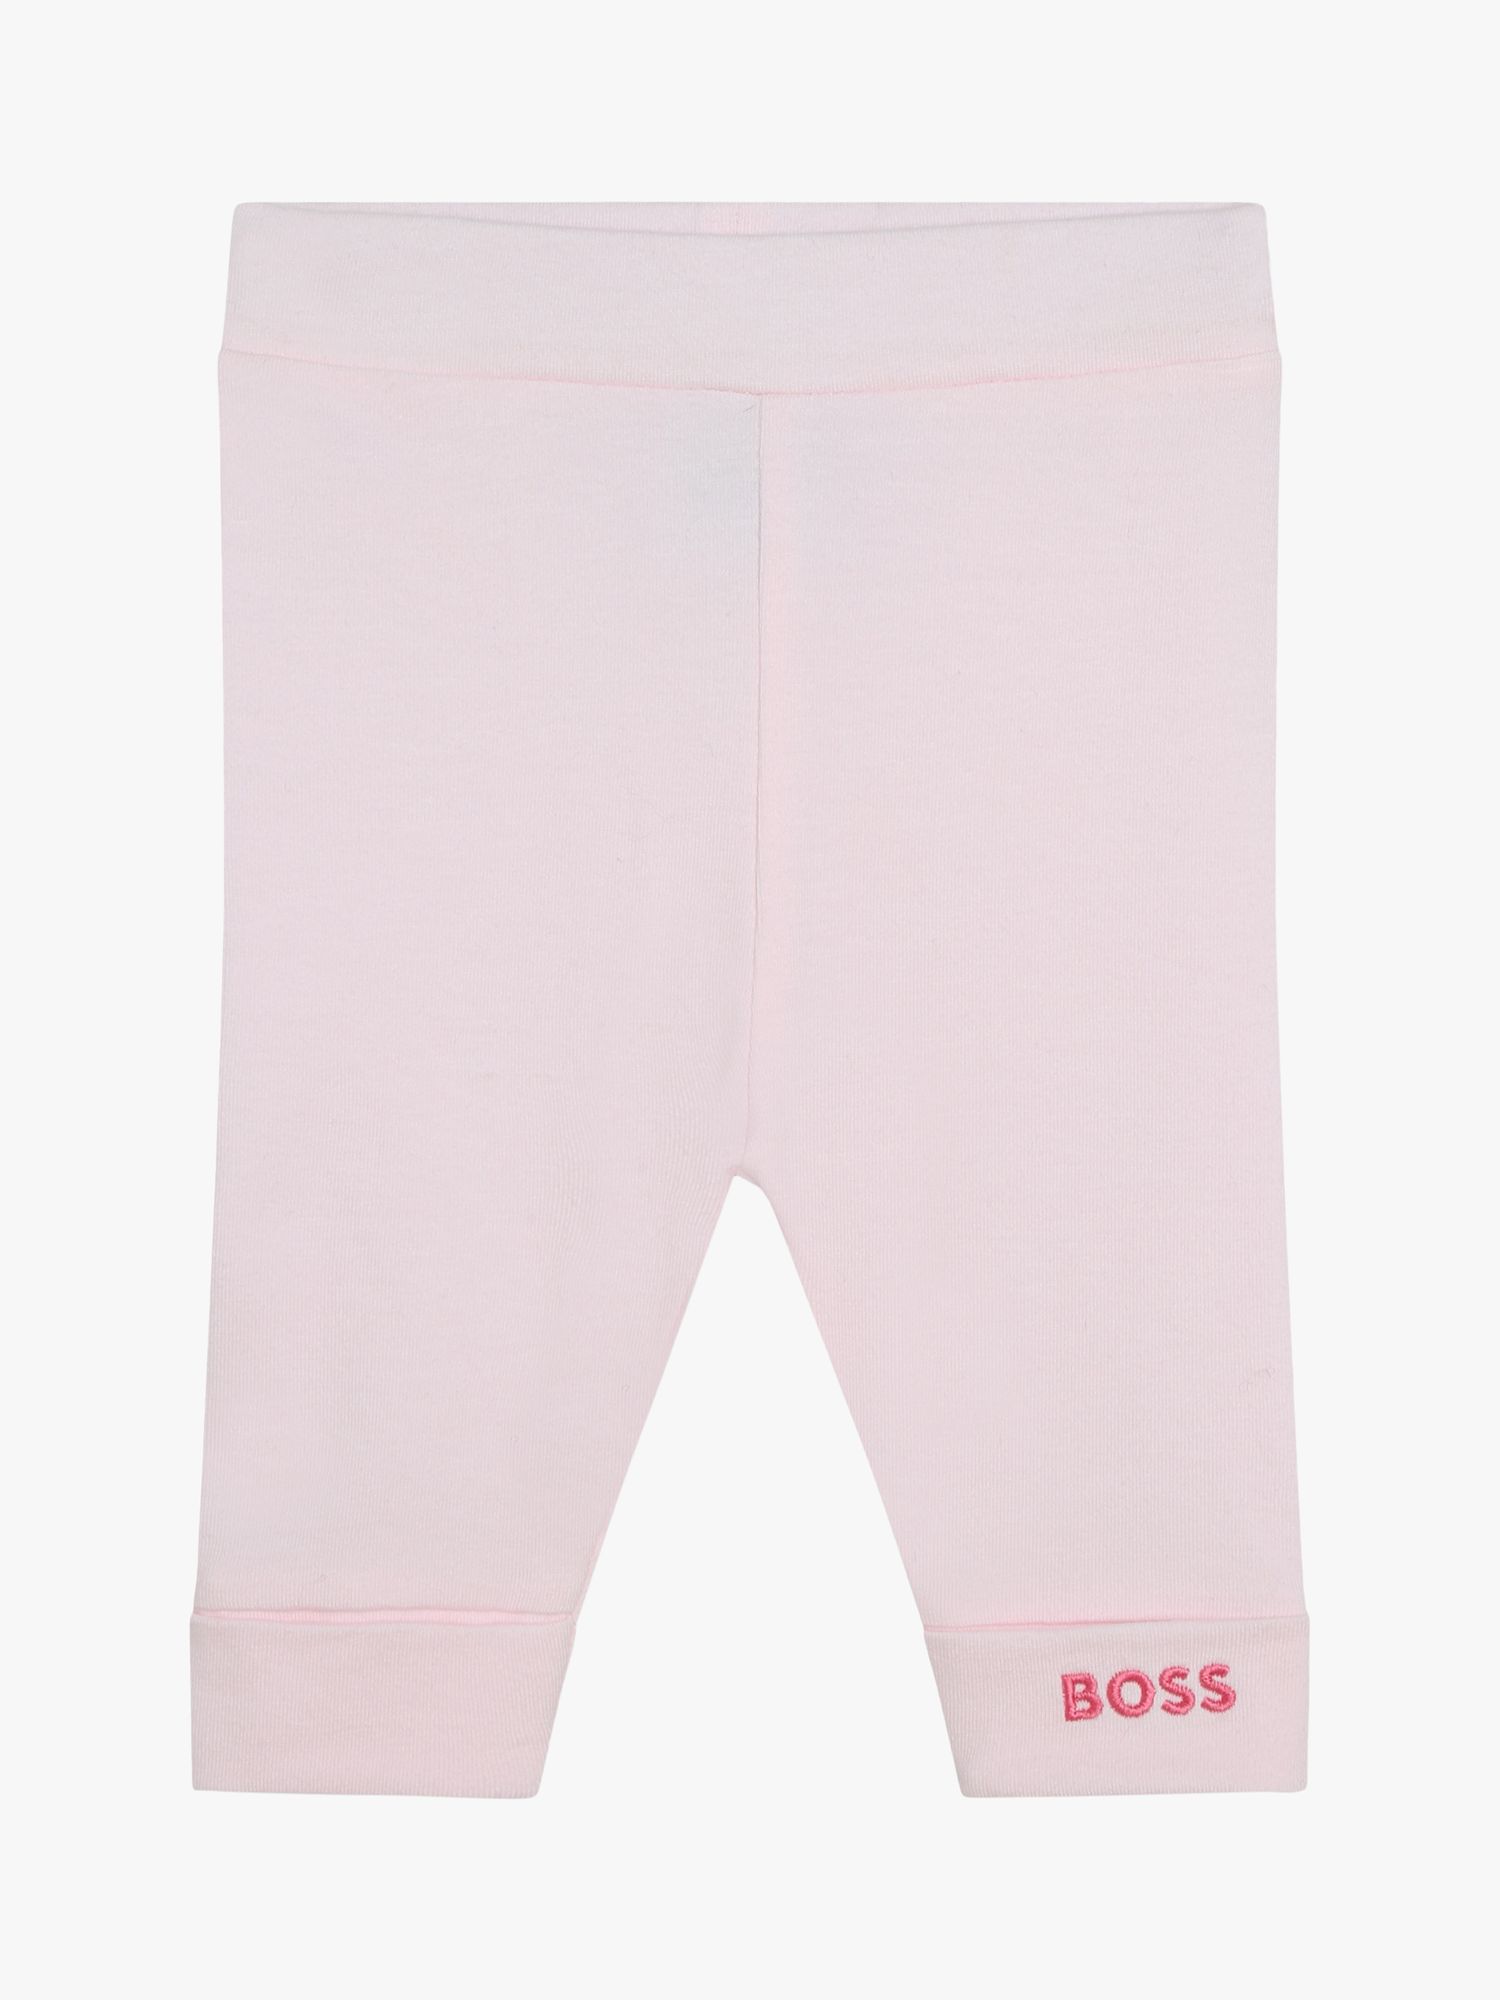 Леггинсы BOSS Baby с вышитым логотипом HUGO BOSS, светло-розовый